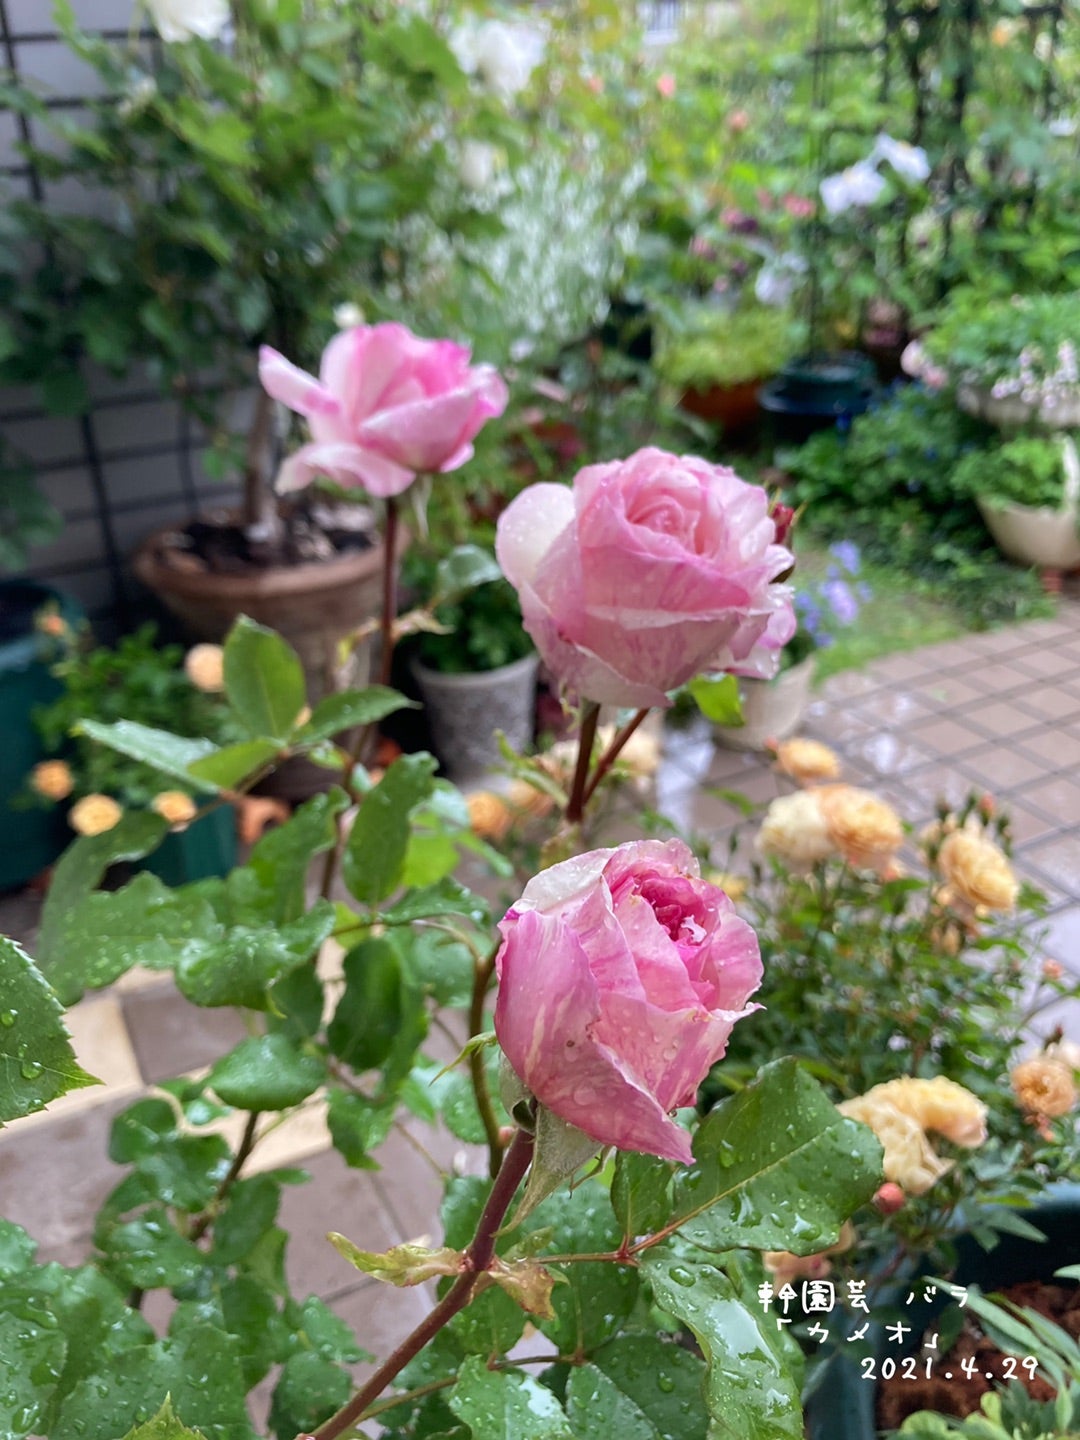 幹園芸のバラ「カメオ」 | ✿…平穏な日常に彩りを…✿